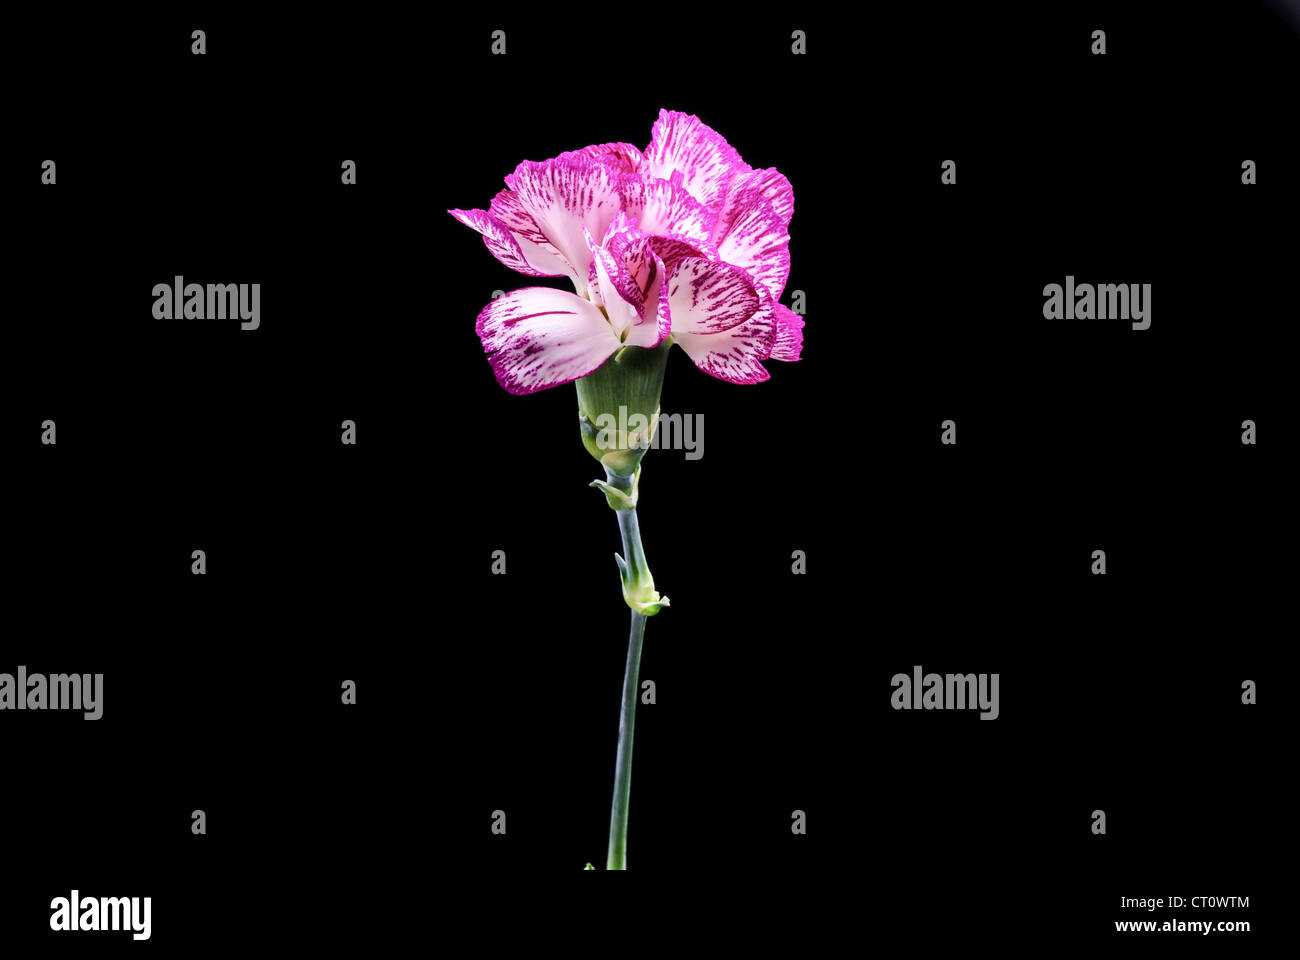 Clavel flores con el fondo negro Foto de stock